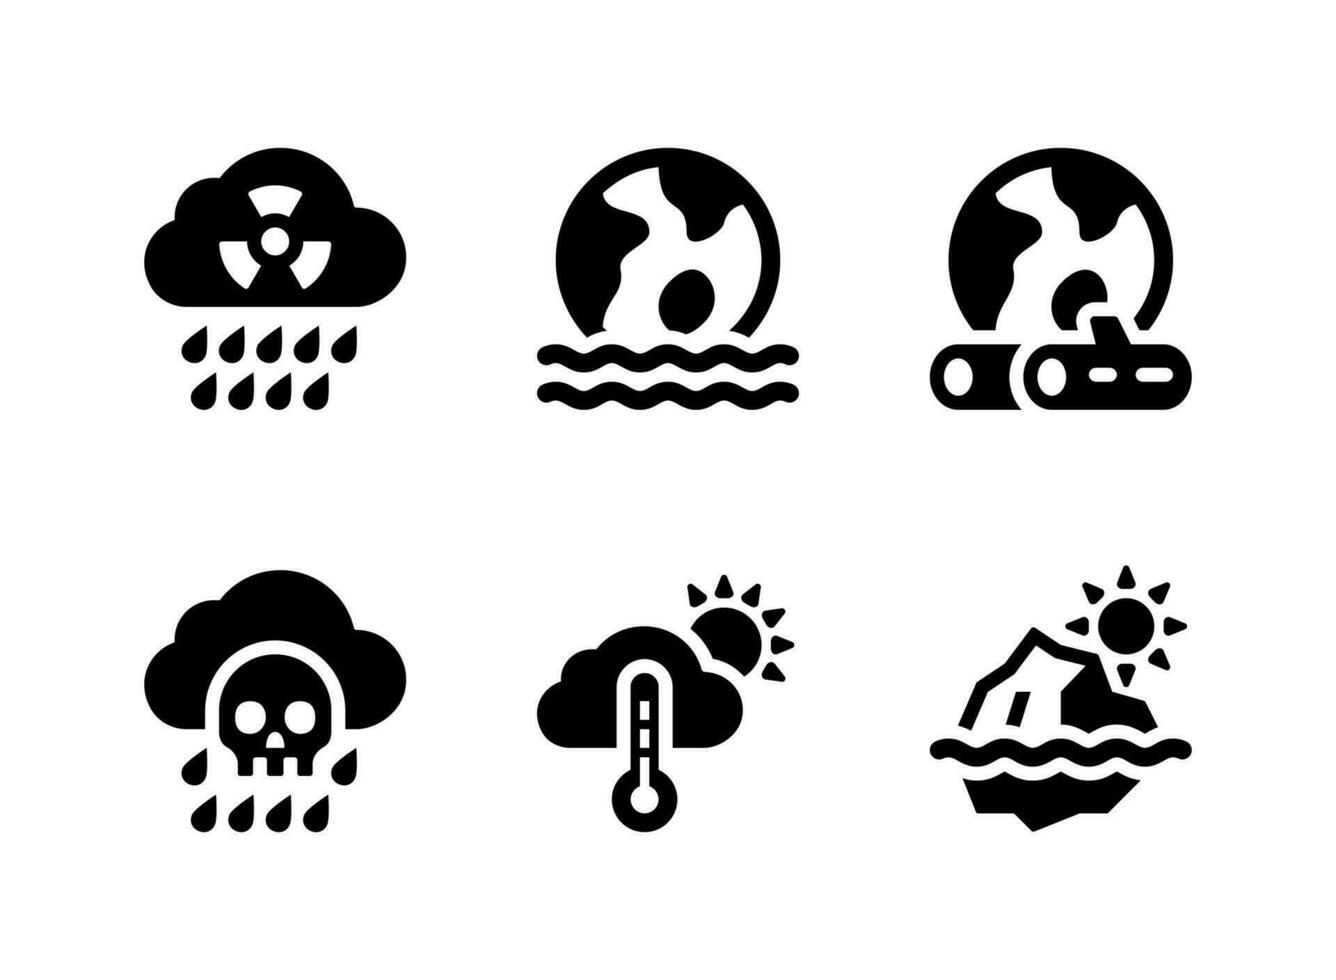 eenvoudige set van klimaatverandering gerelateerde vector solide pictogrammen. bevat iconen als zure regen, overstromingsramp, ontbossing en meer.